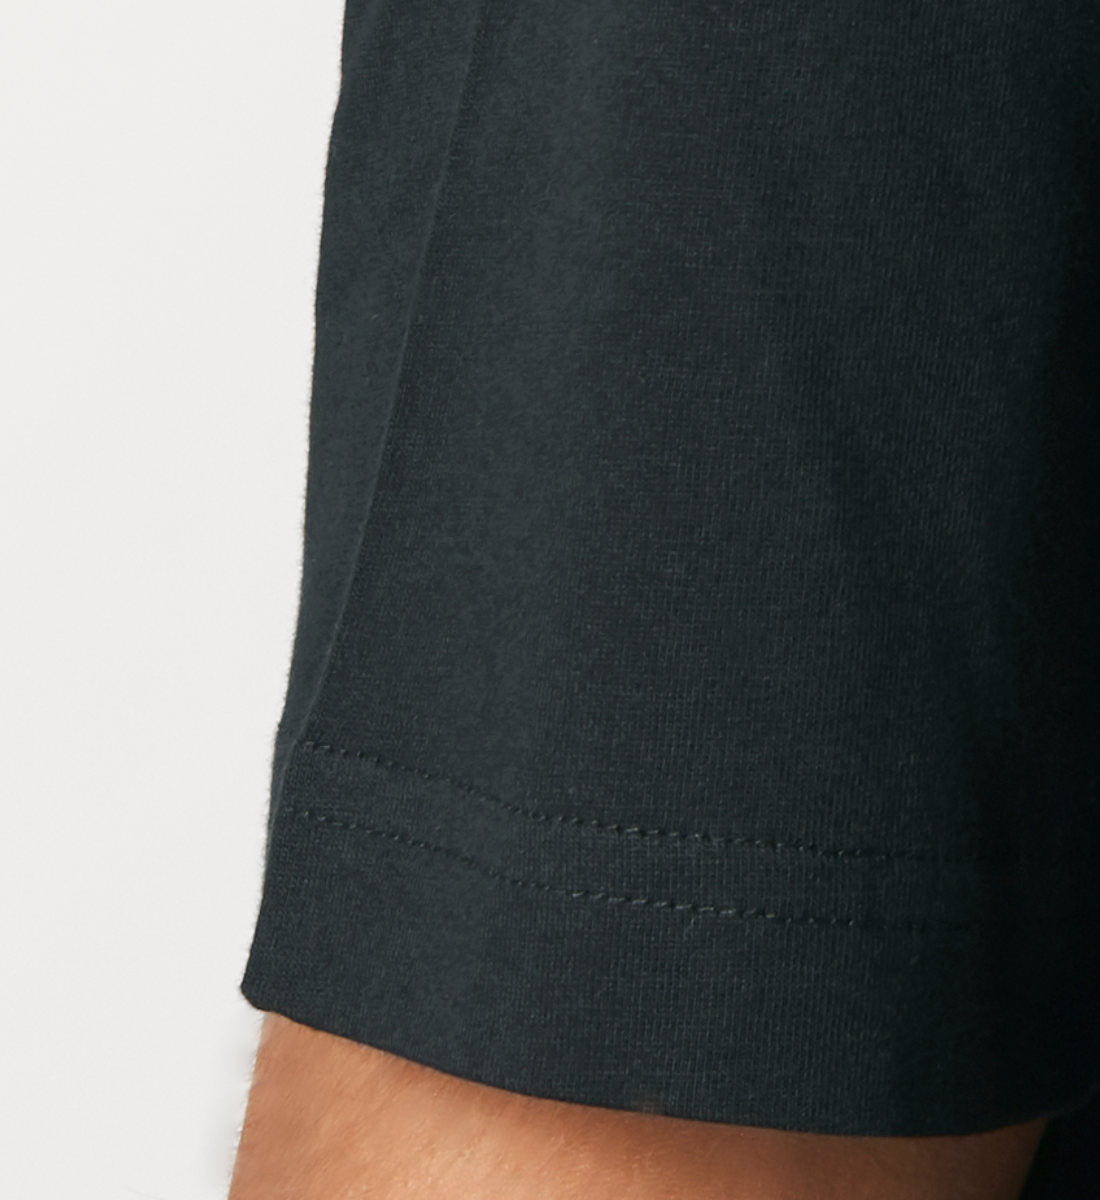 Schwarzes T-Shirt Unisex Relaxed Fit für Damen und Herren bedruckt mit dem Design der Roger Rockawoo Kollektion Musiker LoFi Junky